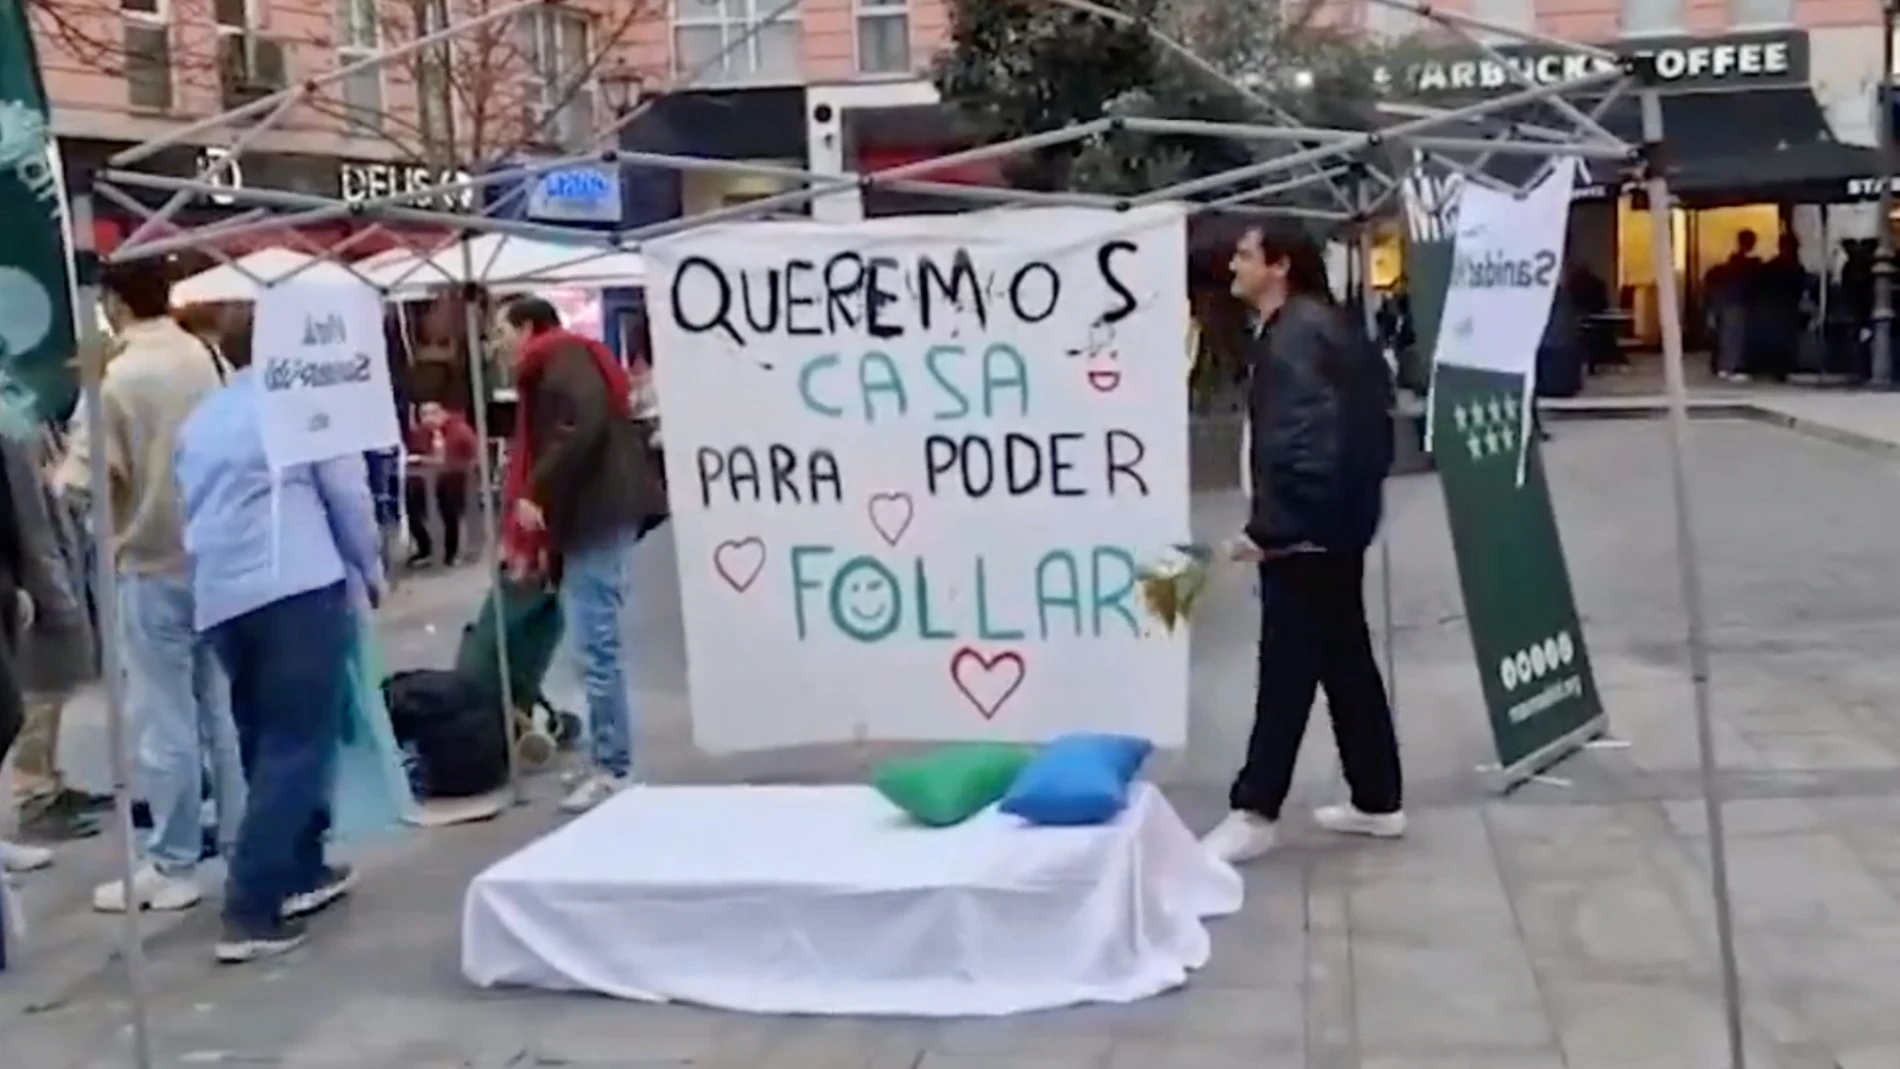 Cartel de los jóvenes de Más Madrid: "Queremos casa para poder follar"